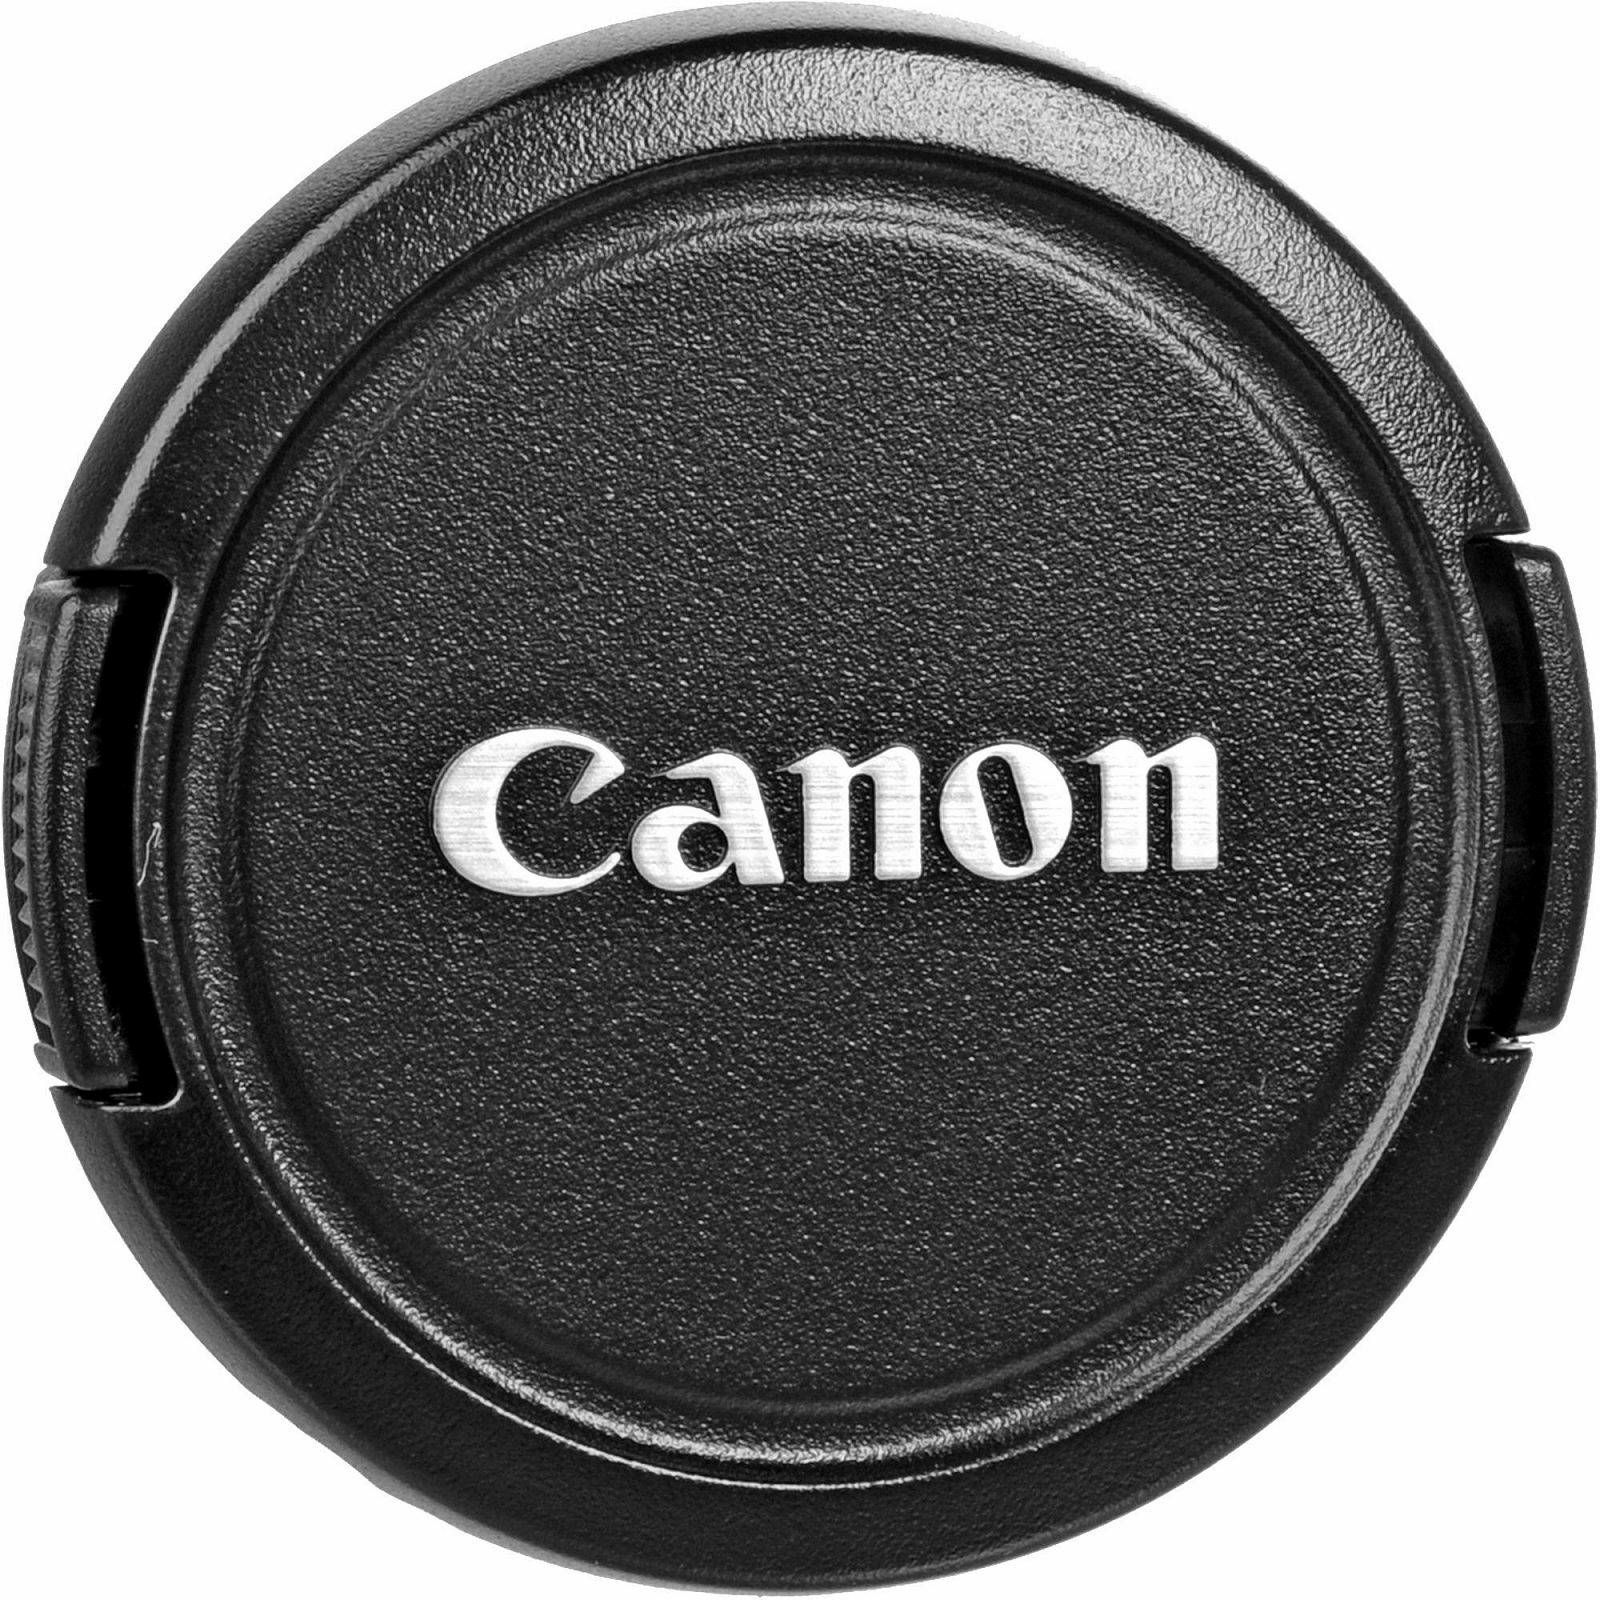 Canon EOS 2000D + 18-55 IS + 50mm f/1.8 STM DSLR Digitalni fotoaparat s objektivom EF-S 18-55mm f/3.5-5.6 i 50 1.8 (2728C030AA)